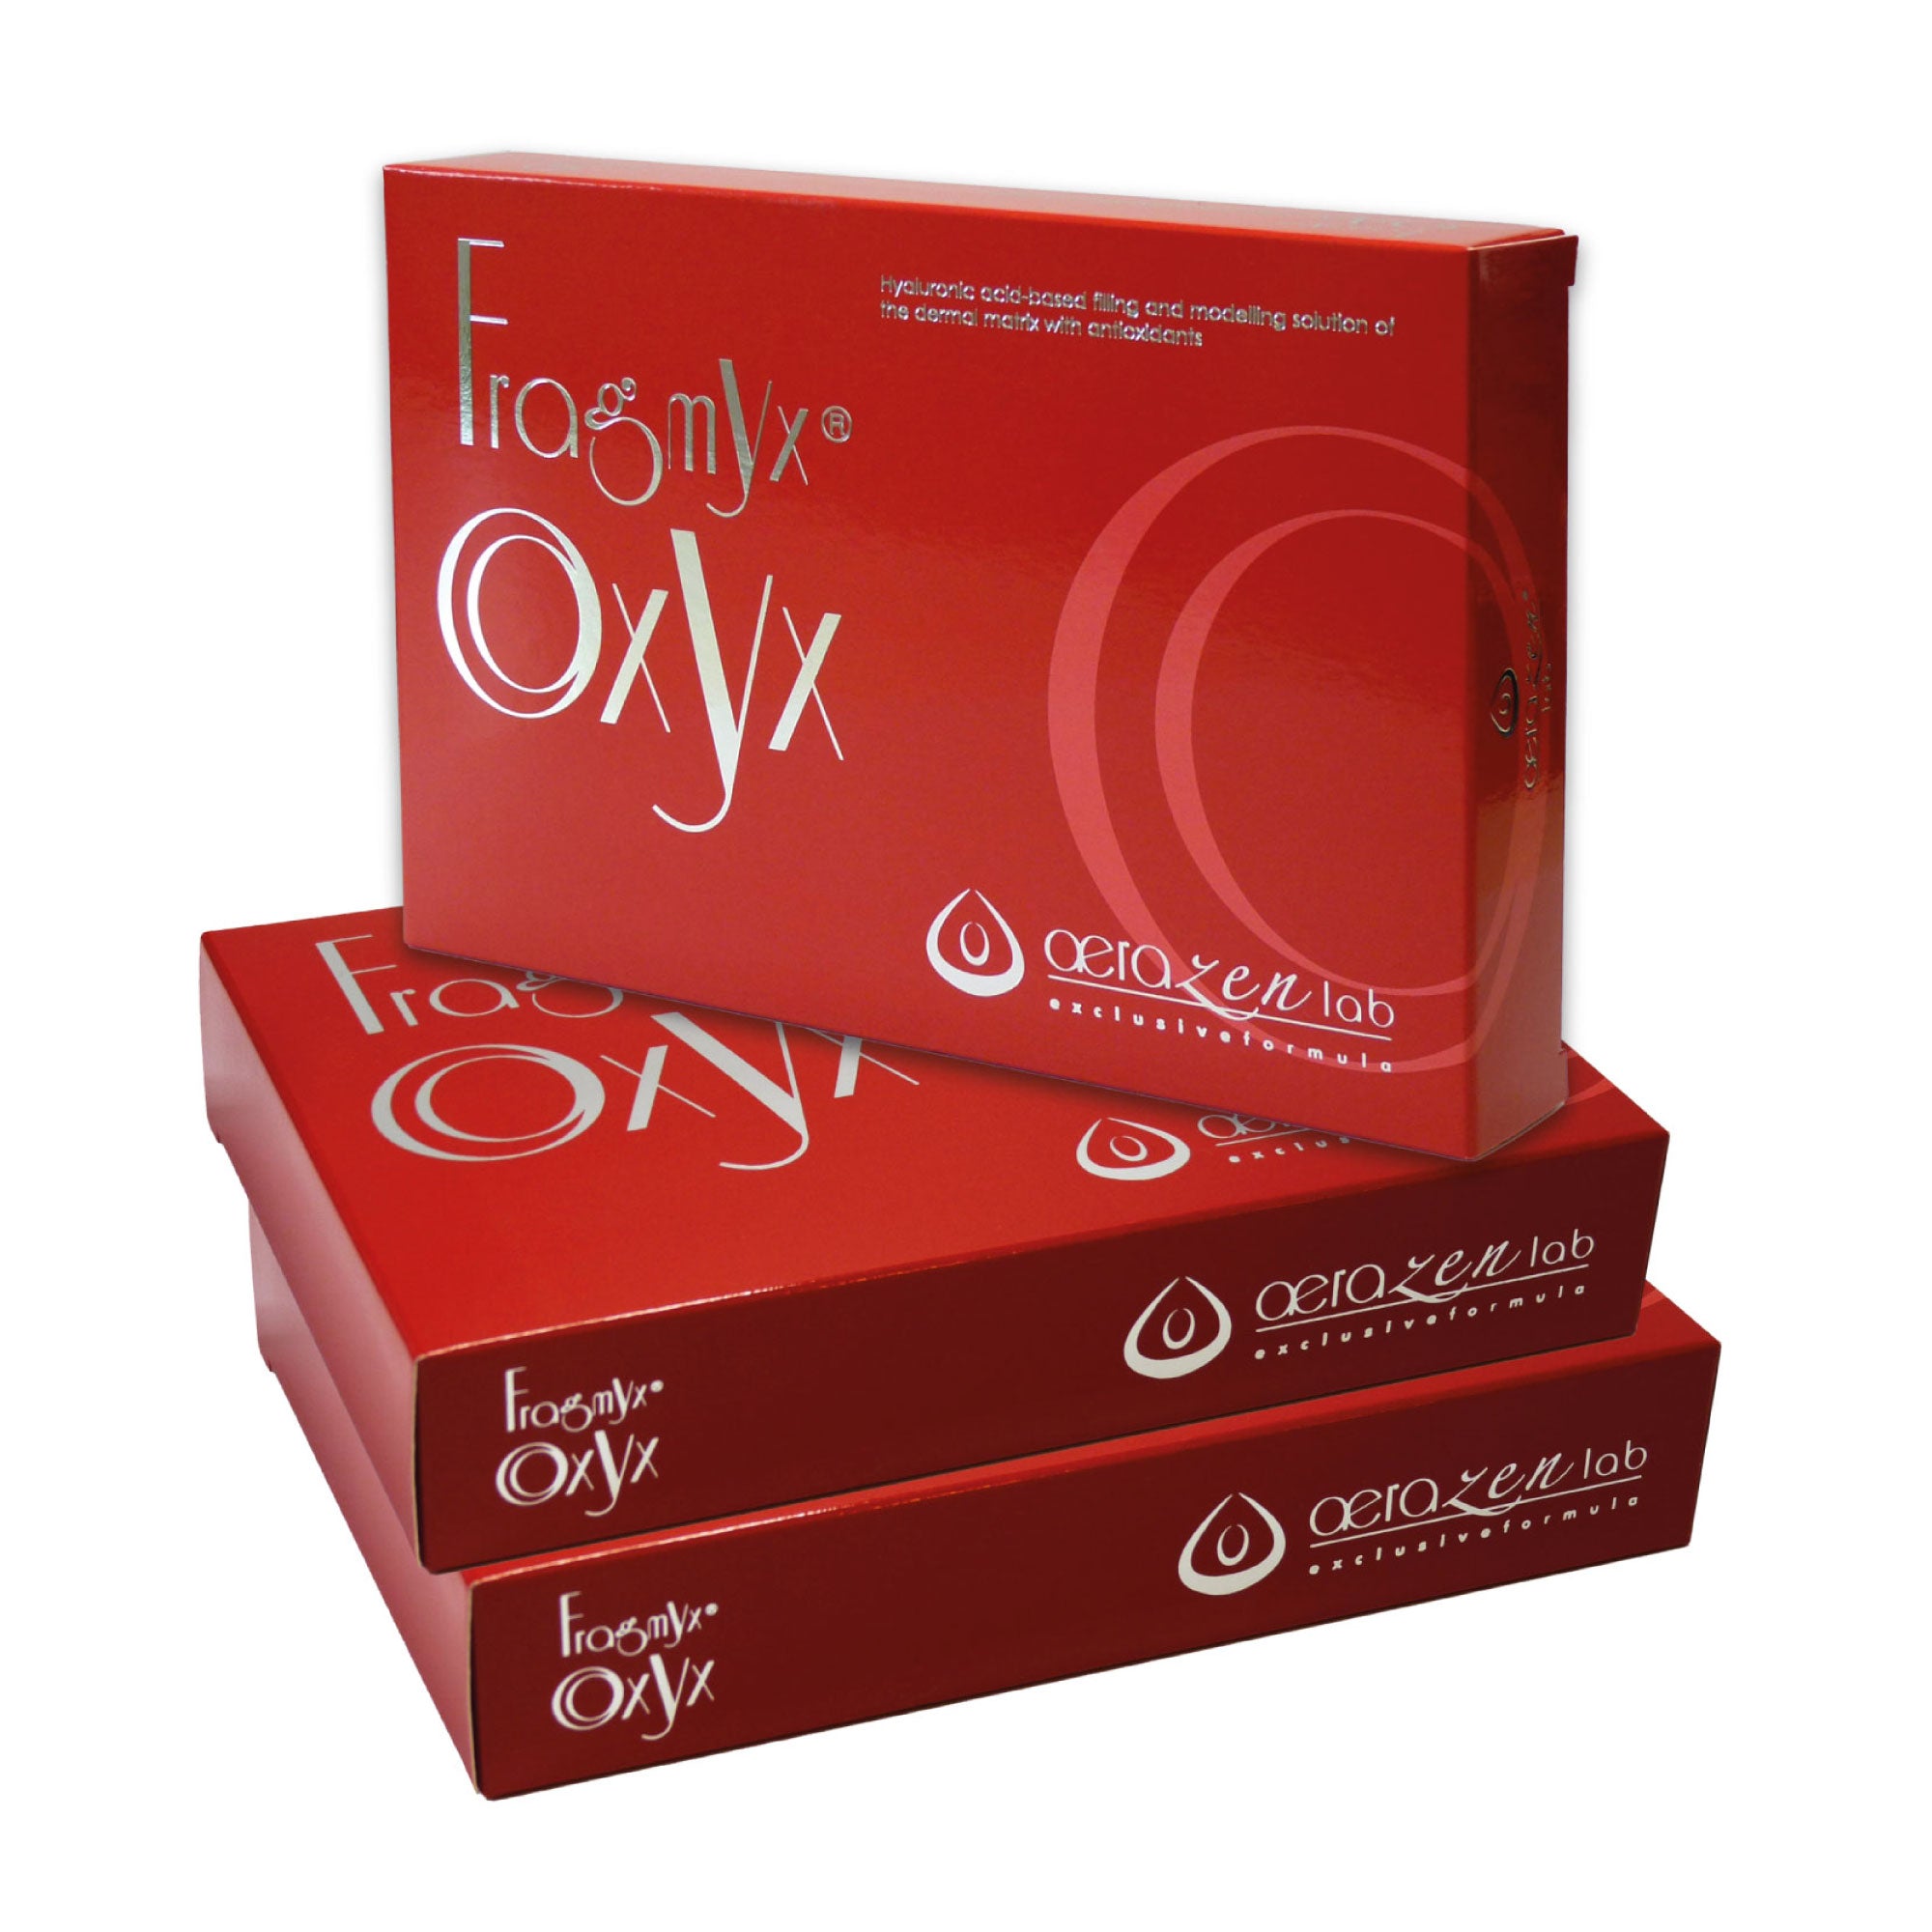 FRAGMYX OXYX – Lösung auf Basis von Hyaluronsäure aus der Hautmatrix mit Antioxidantien